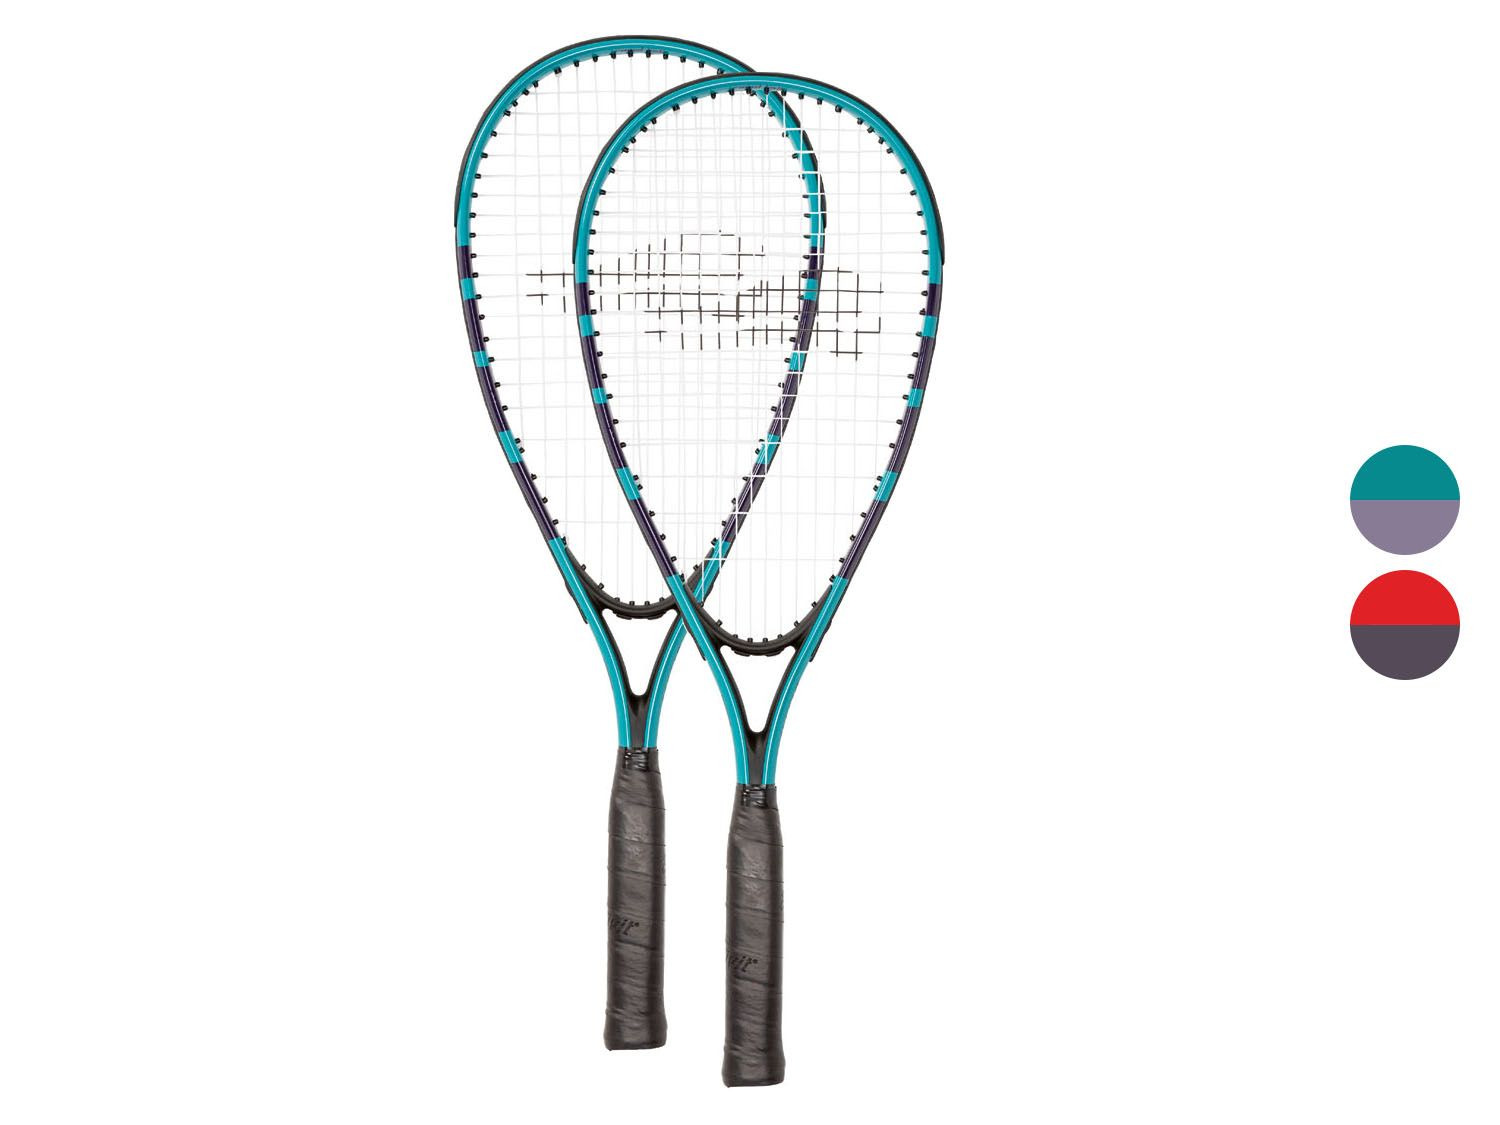 ik wil ambulance Wiskunde 2-in-1 badminton/tennis set kopen? | LIDL